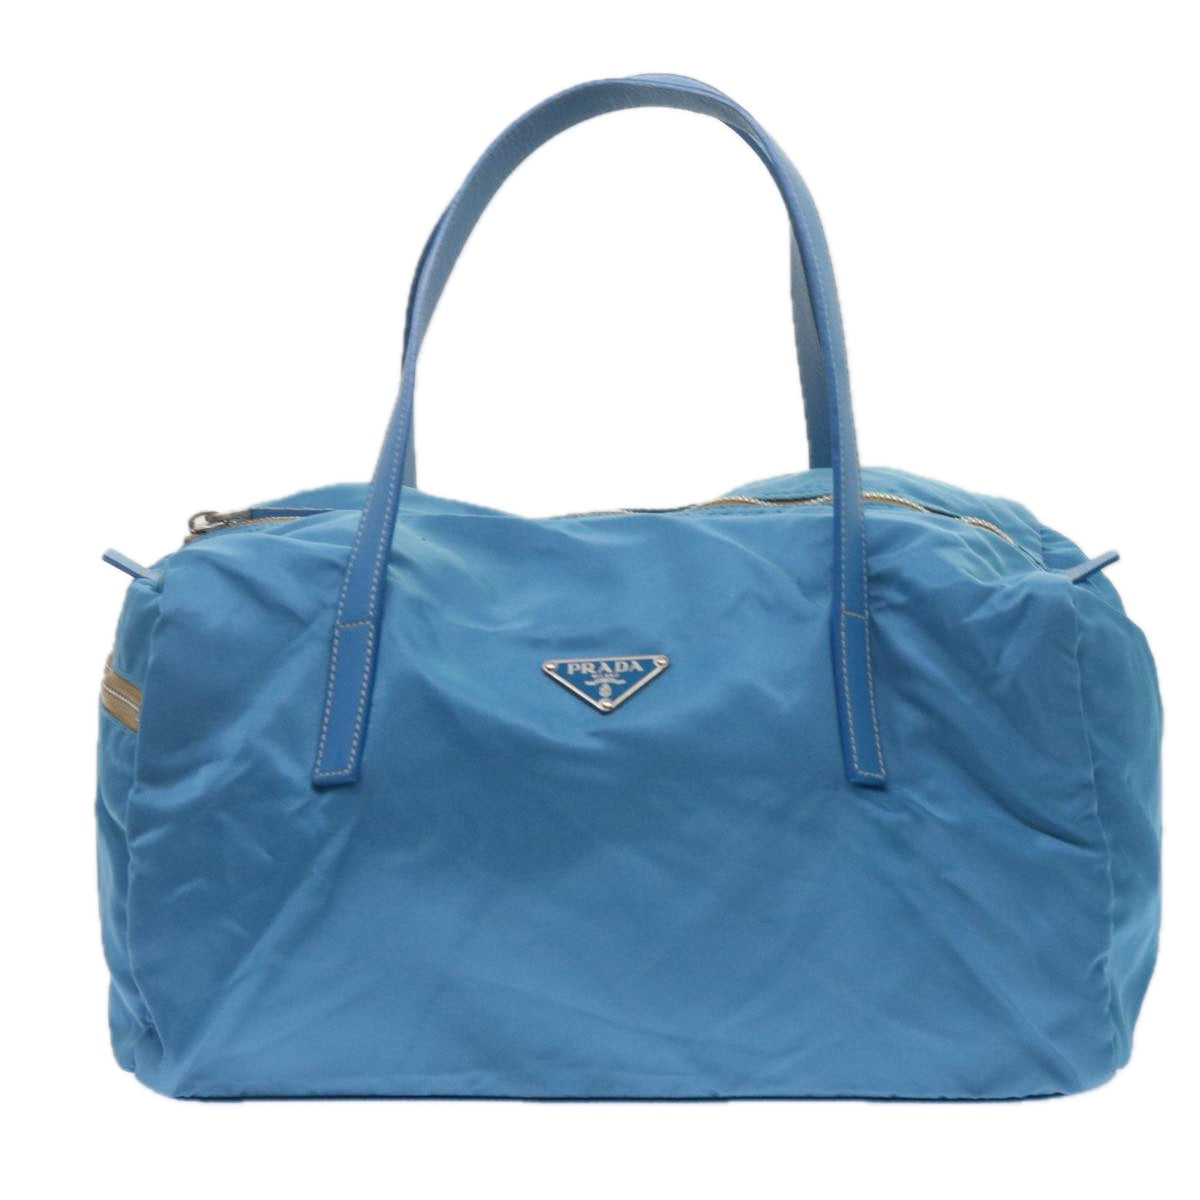 PRADA Hand Bag Nylon Blue Auth 61706 - 0